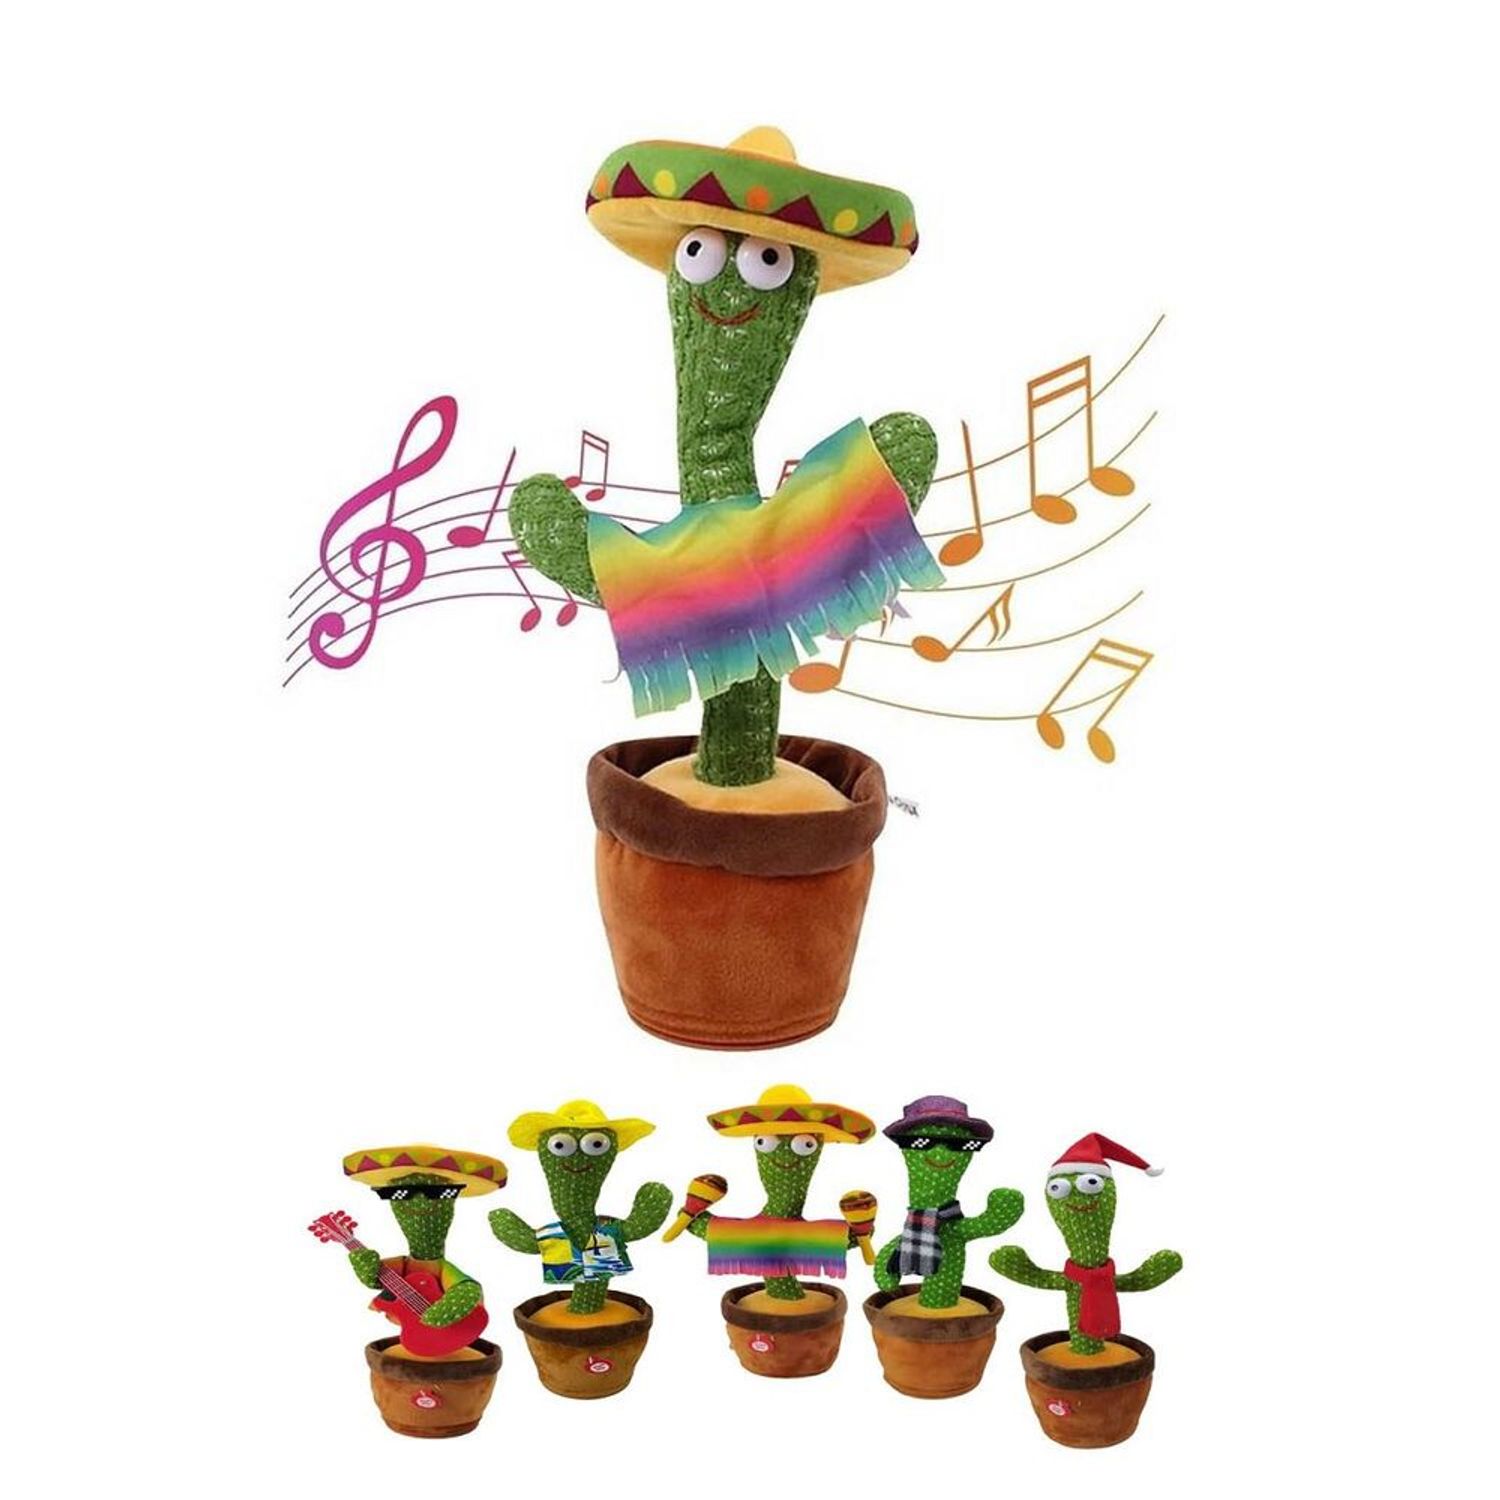 Cactus bailarín: el juguete para bebés que triunfa en Internet